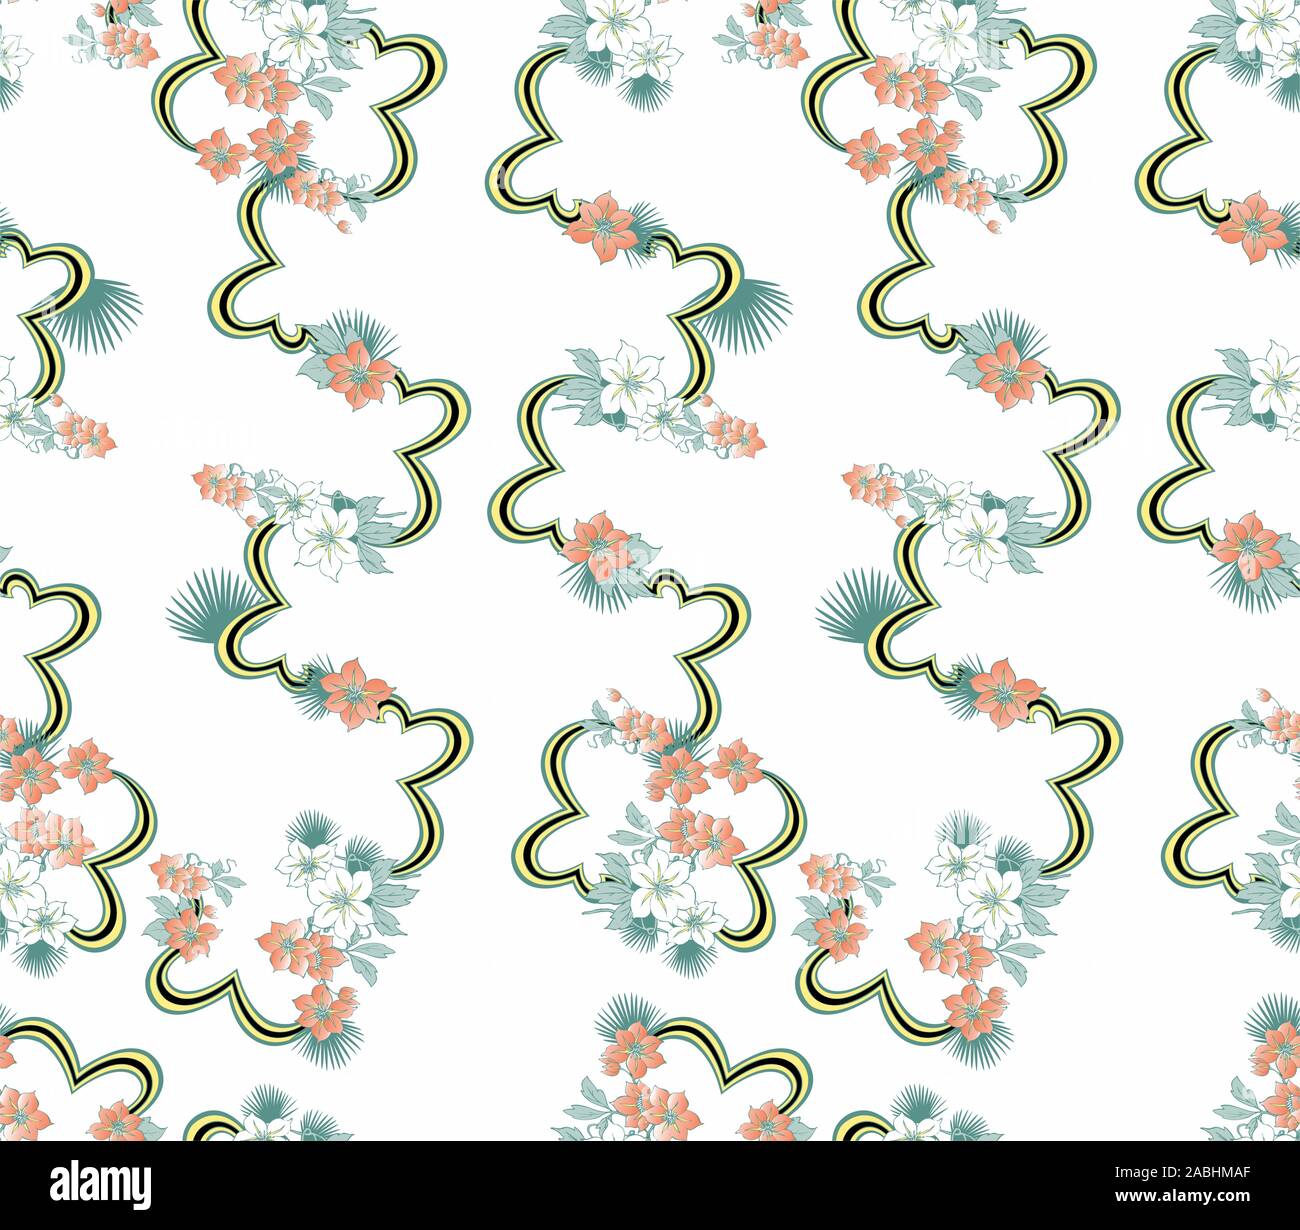 Poco colorfull fiori pattern.perfetta stampa floreale per tessuto tessile. - Vettore Illustrazione Vettoriale